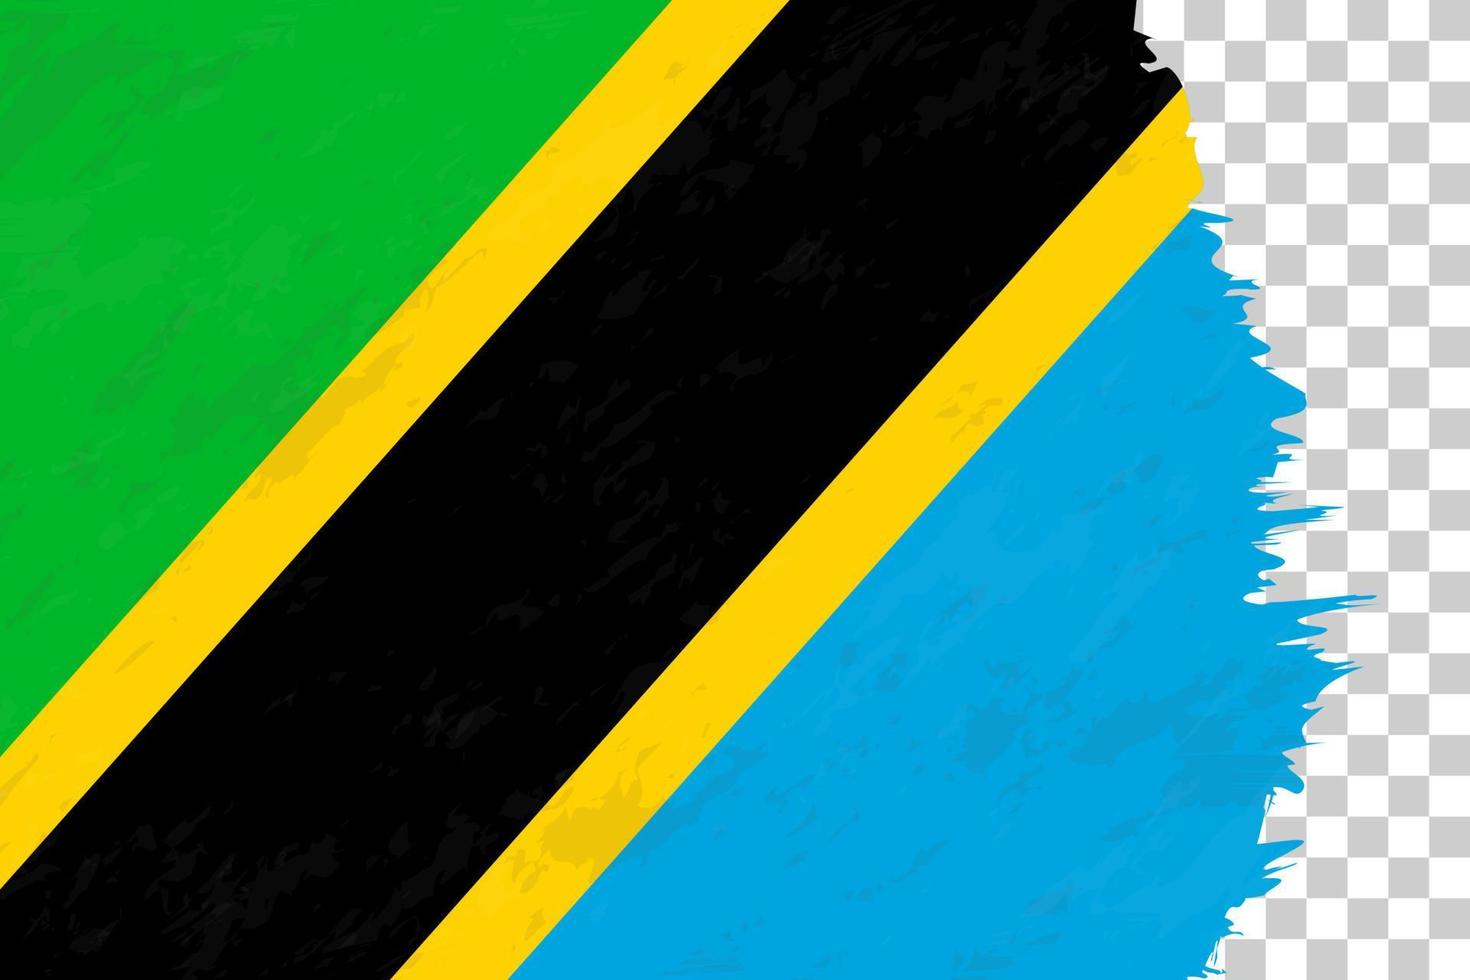 orizzontale astratto grunge spazzolato bandiera della tanzania sulla griglia trasparente. vettore